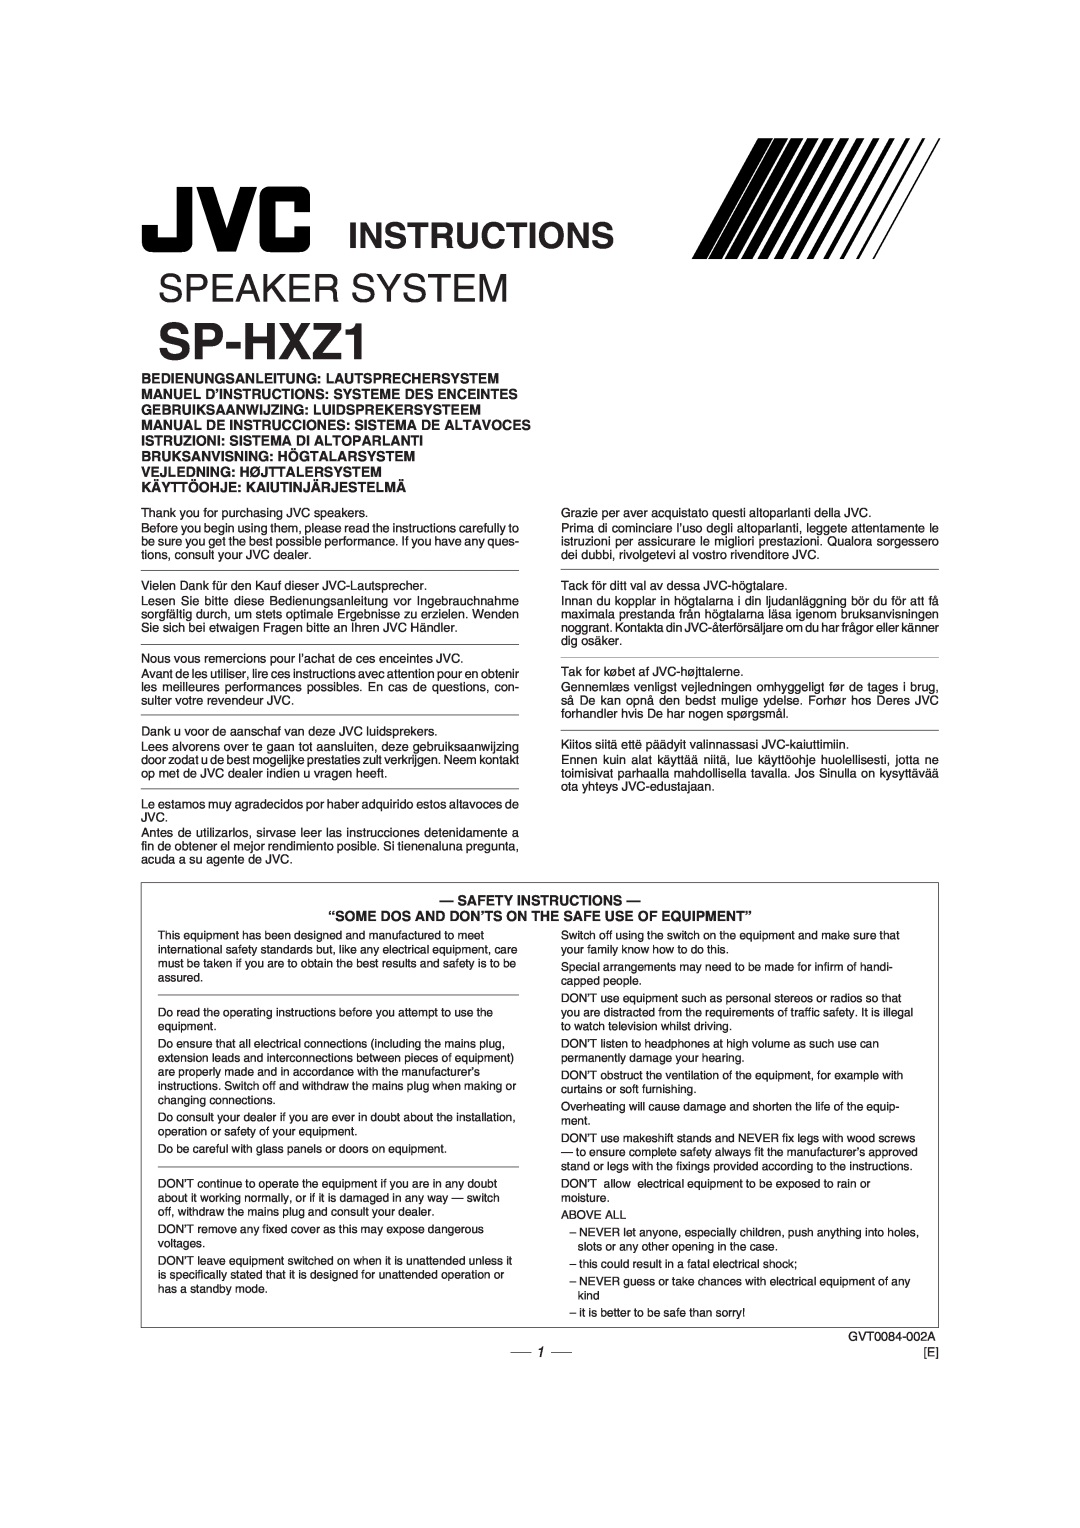 JVC GVT0077-008A manual Instructions, SP-HXZ1, Speaker System 